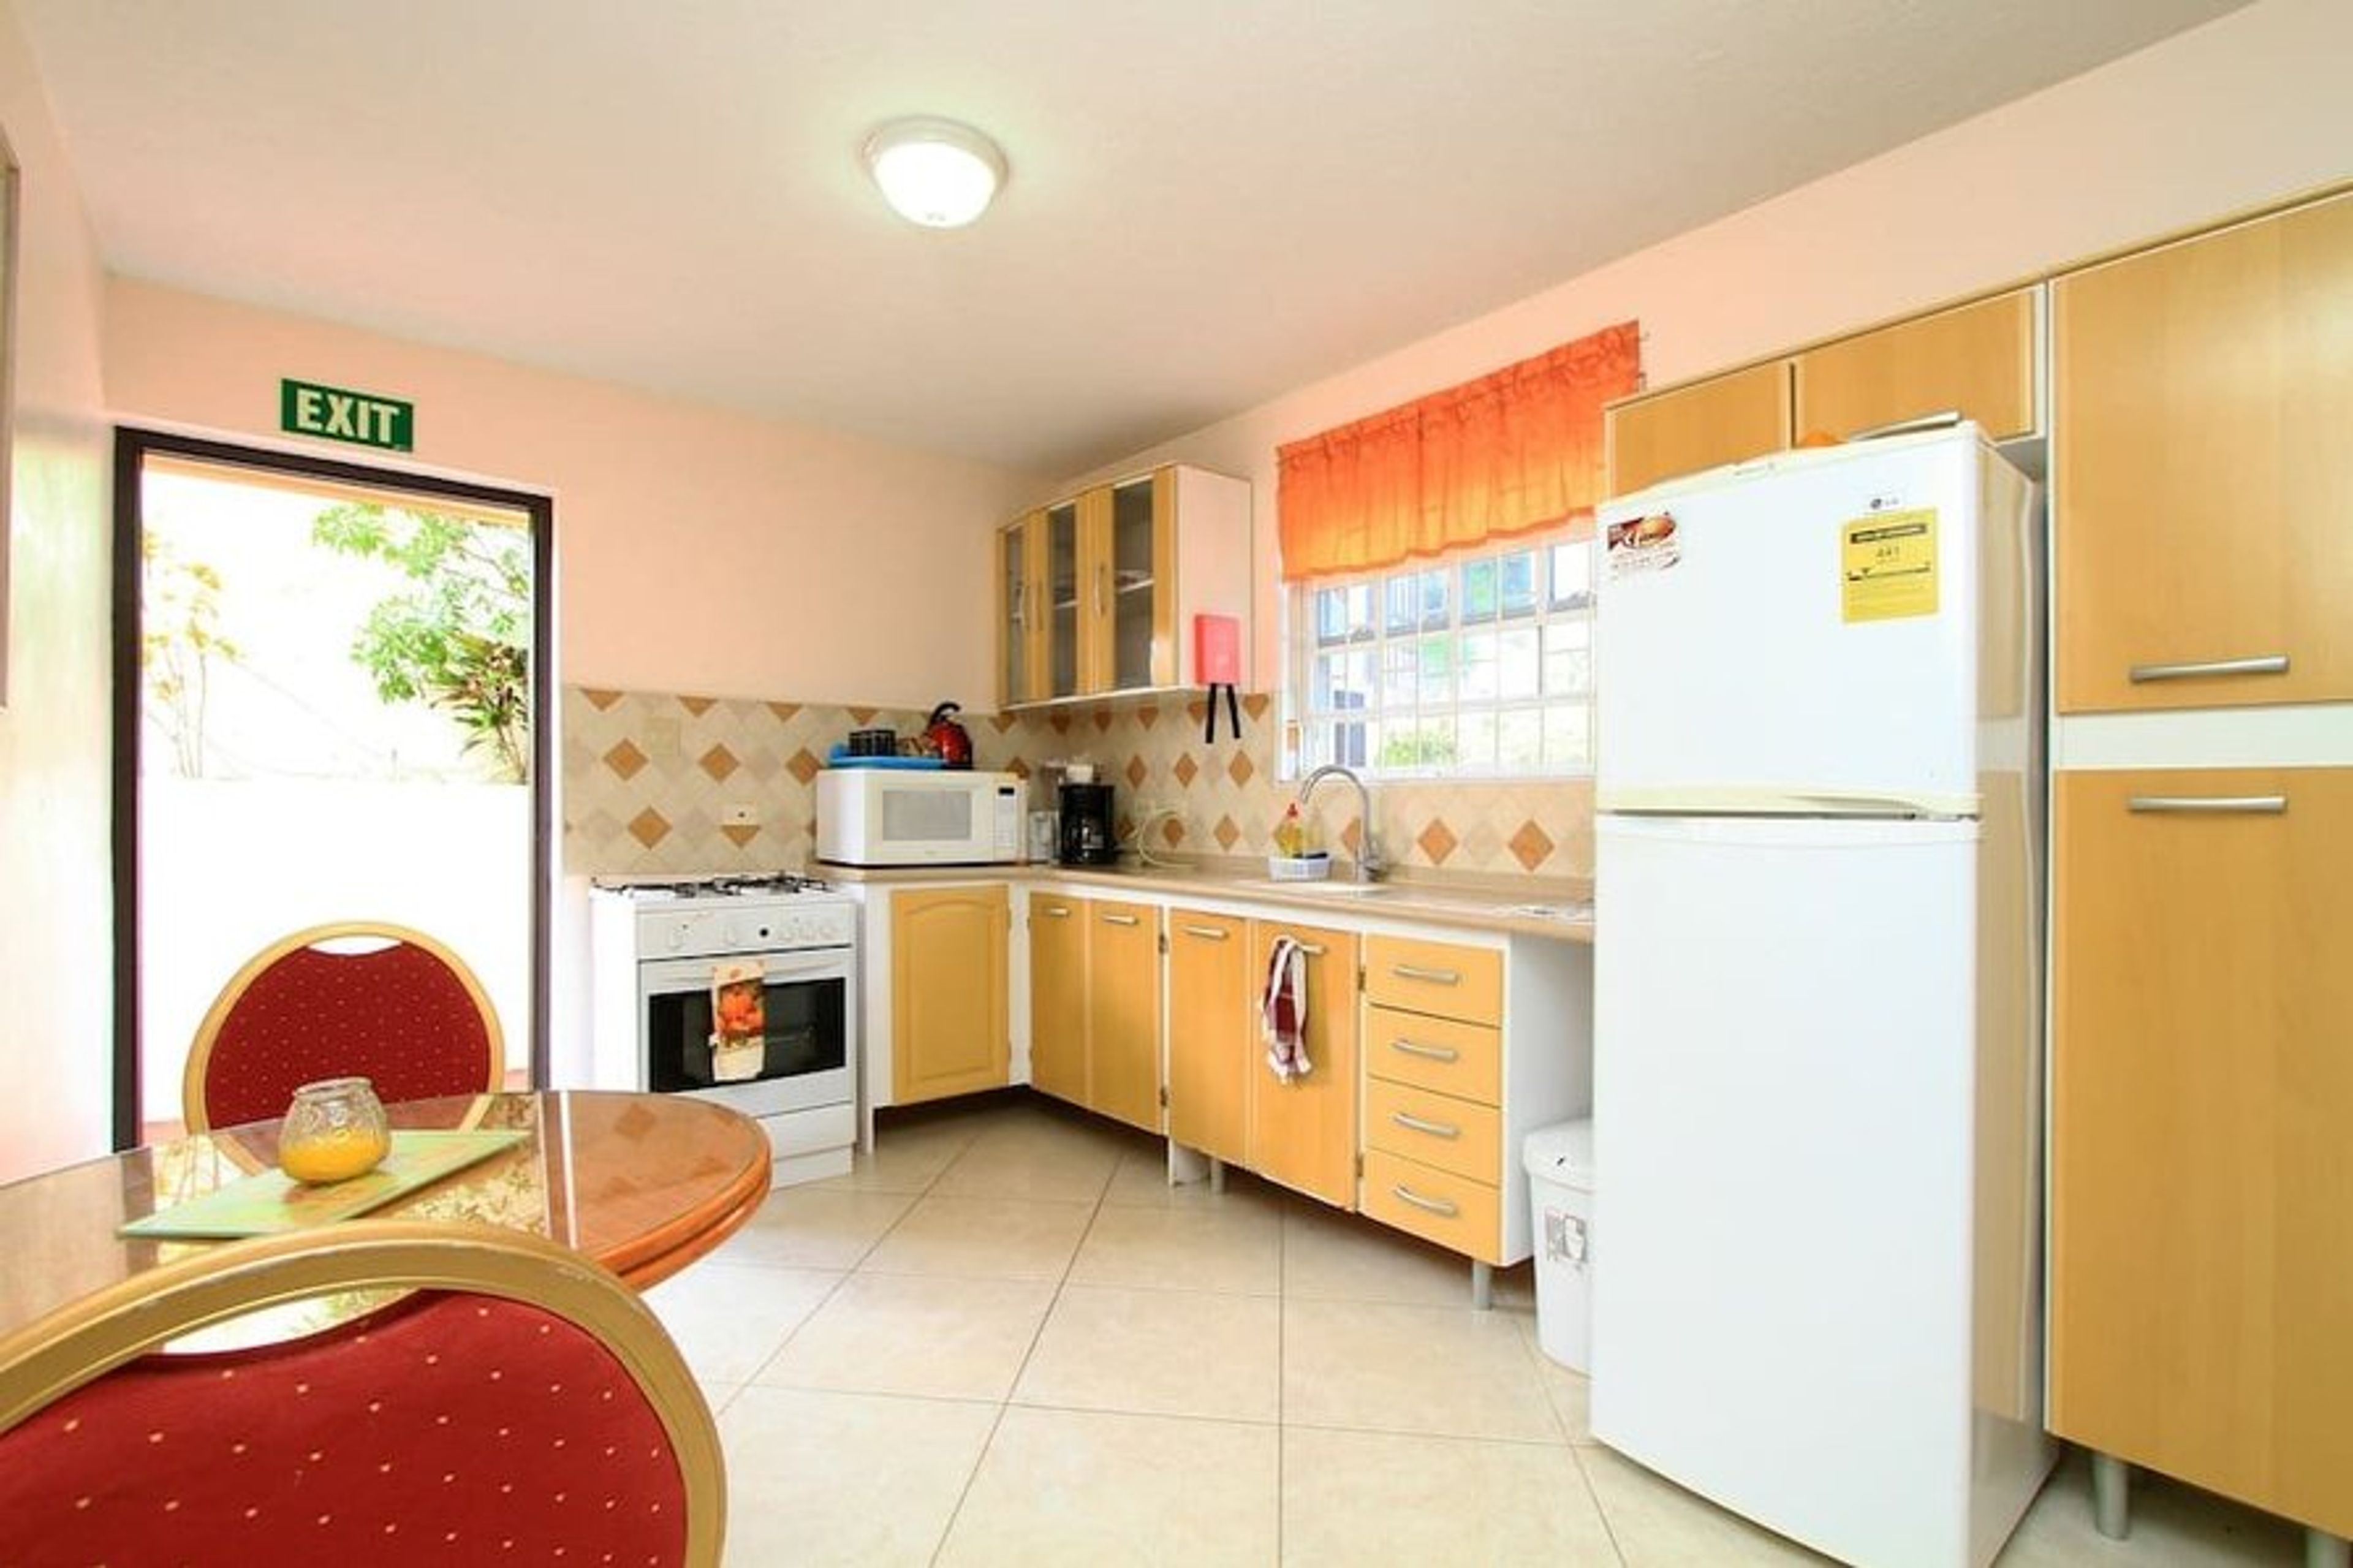 Croton apartment kitchen